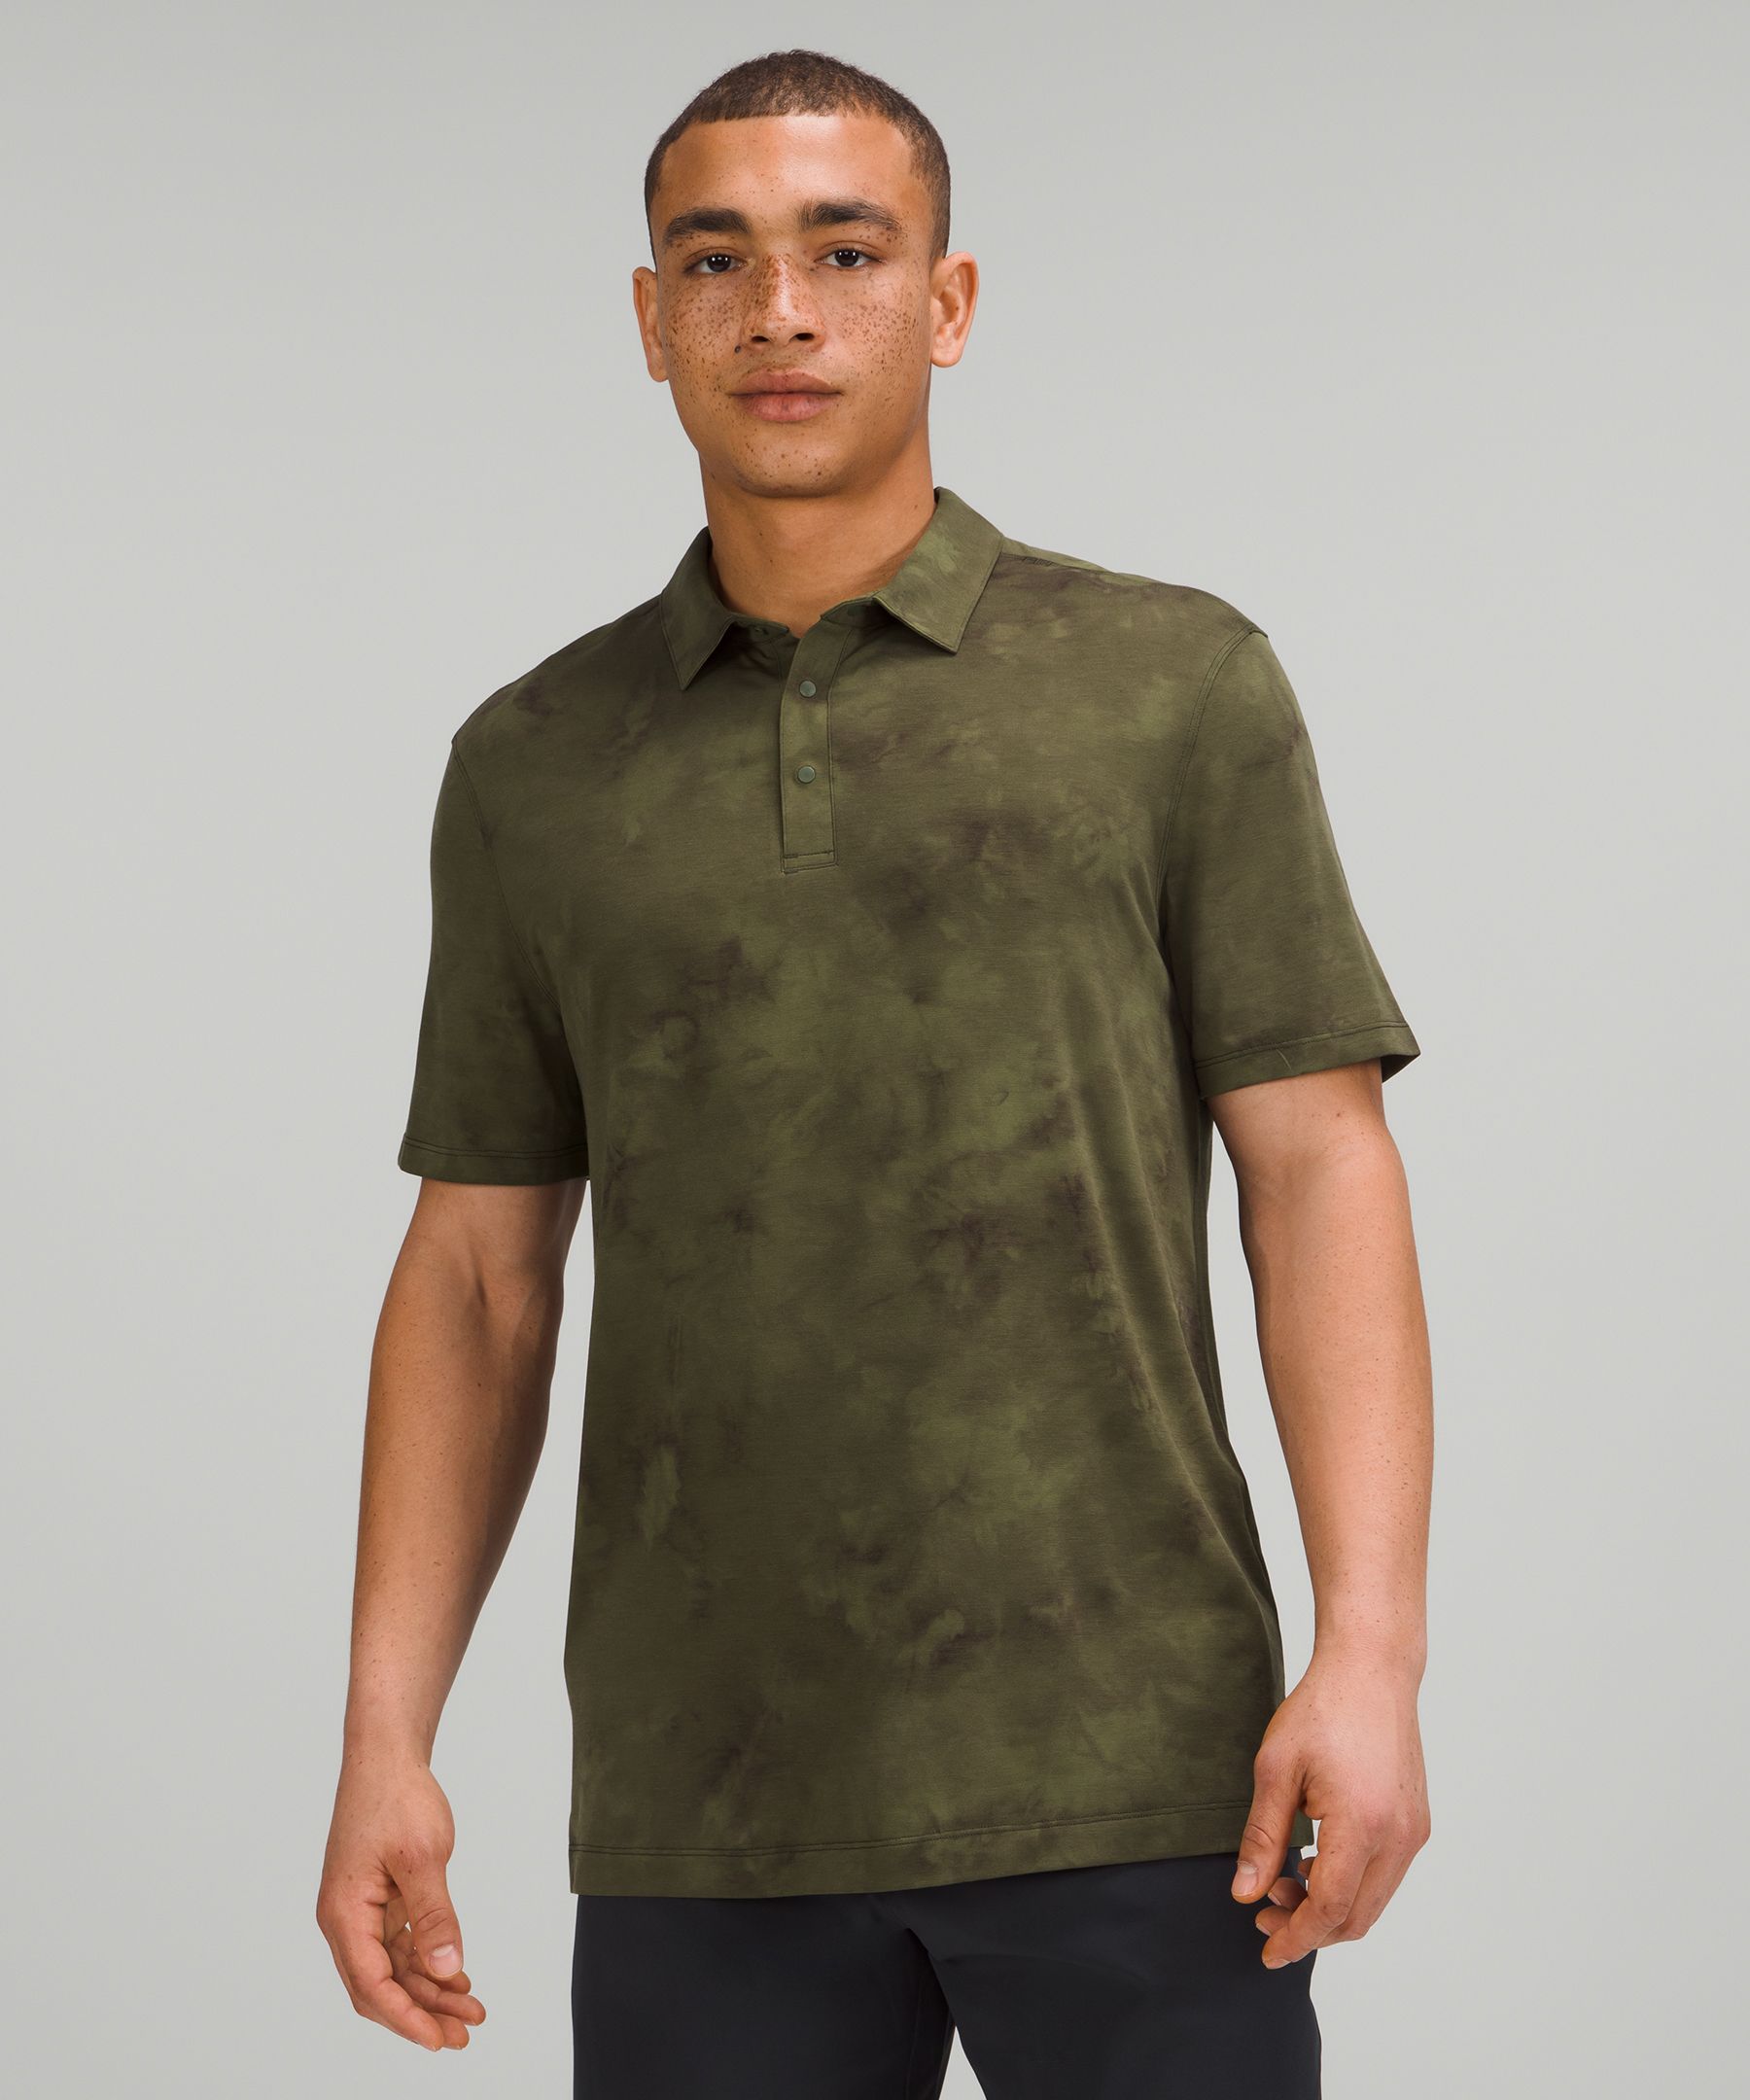 Lululemon Evolution Short Sleeve Polo Shirt In Green